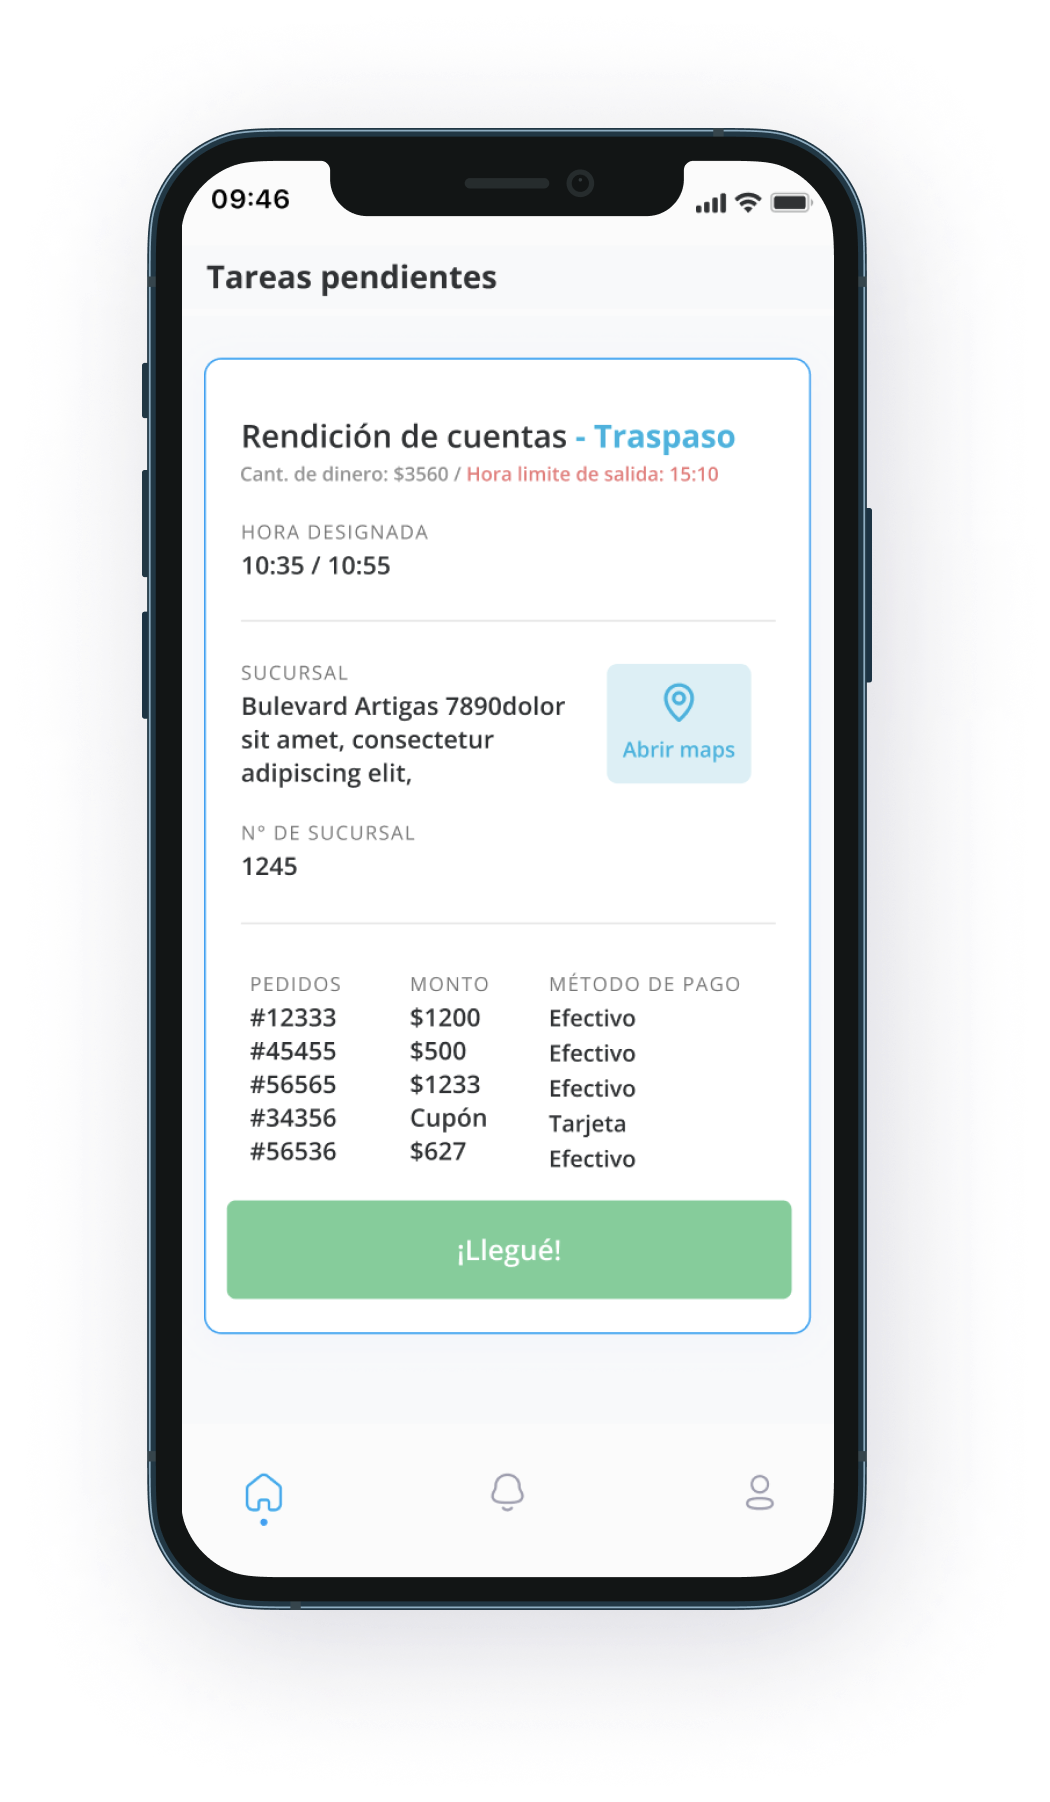 Mobile app for managing deliveries.